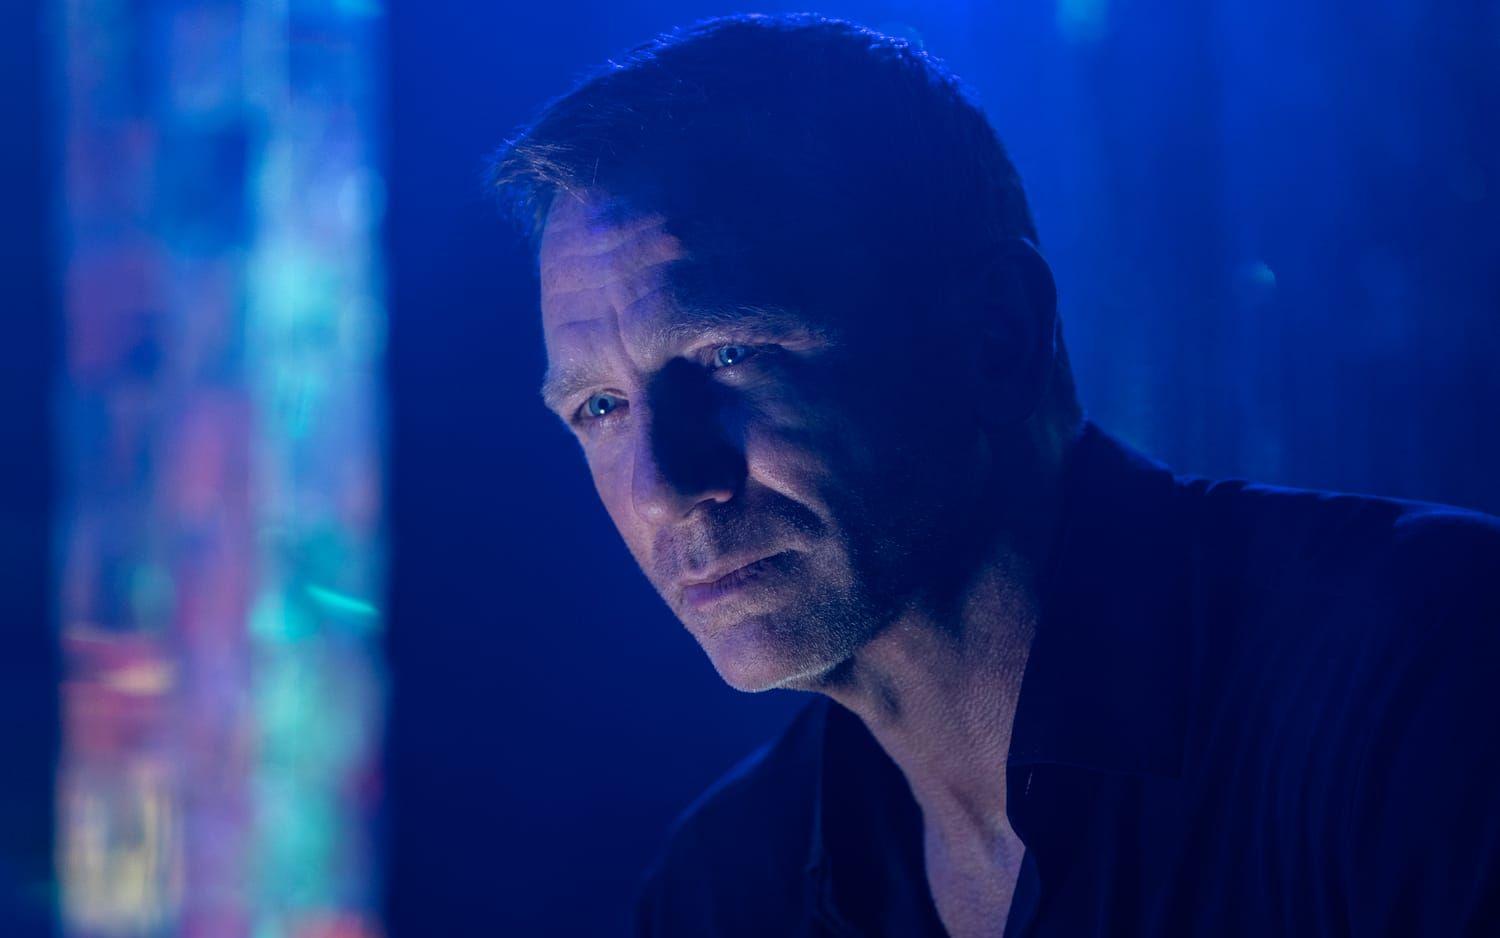 Daniel Craig som James Bond i ”No time to die”. Phoebe Waller-Bridge, skaparen bakom tv-serier som ”Fleabag” , har medförfattat nya Bond-filmen, där hon velat ”smyga in lite feminism”.